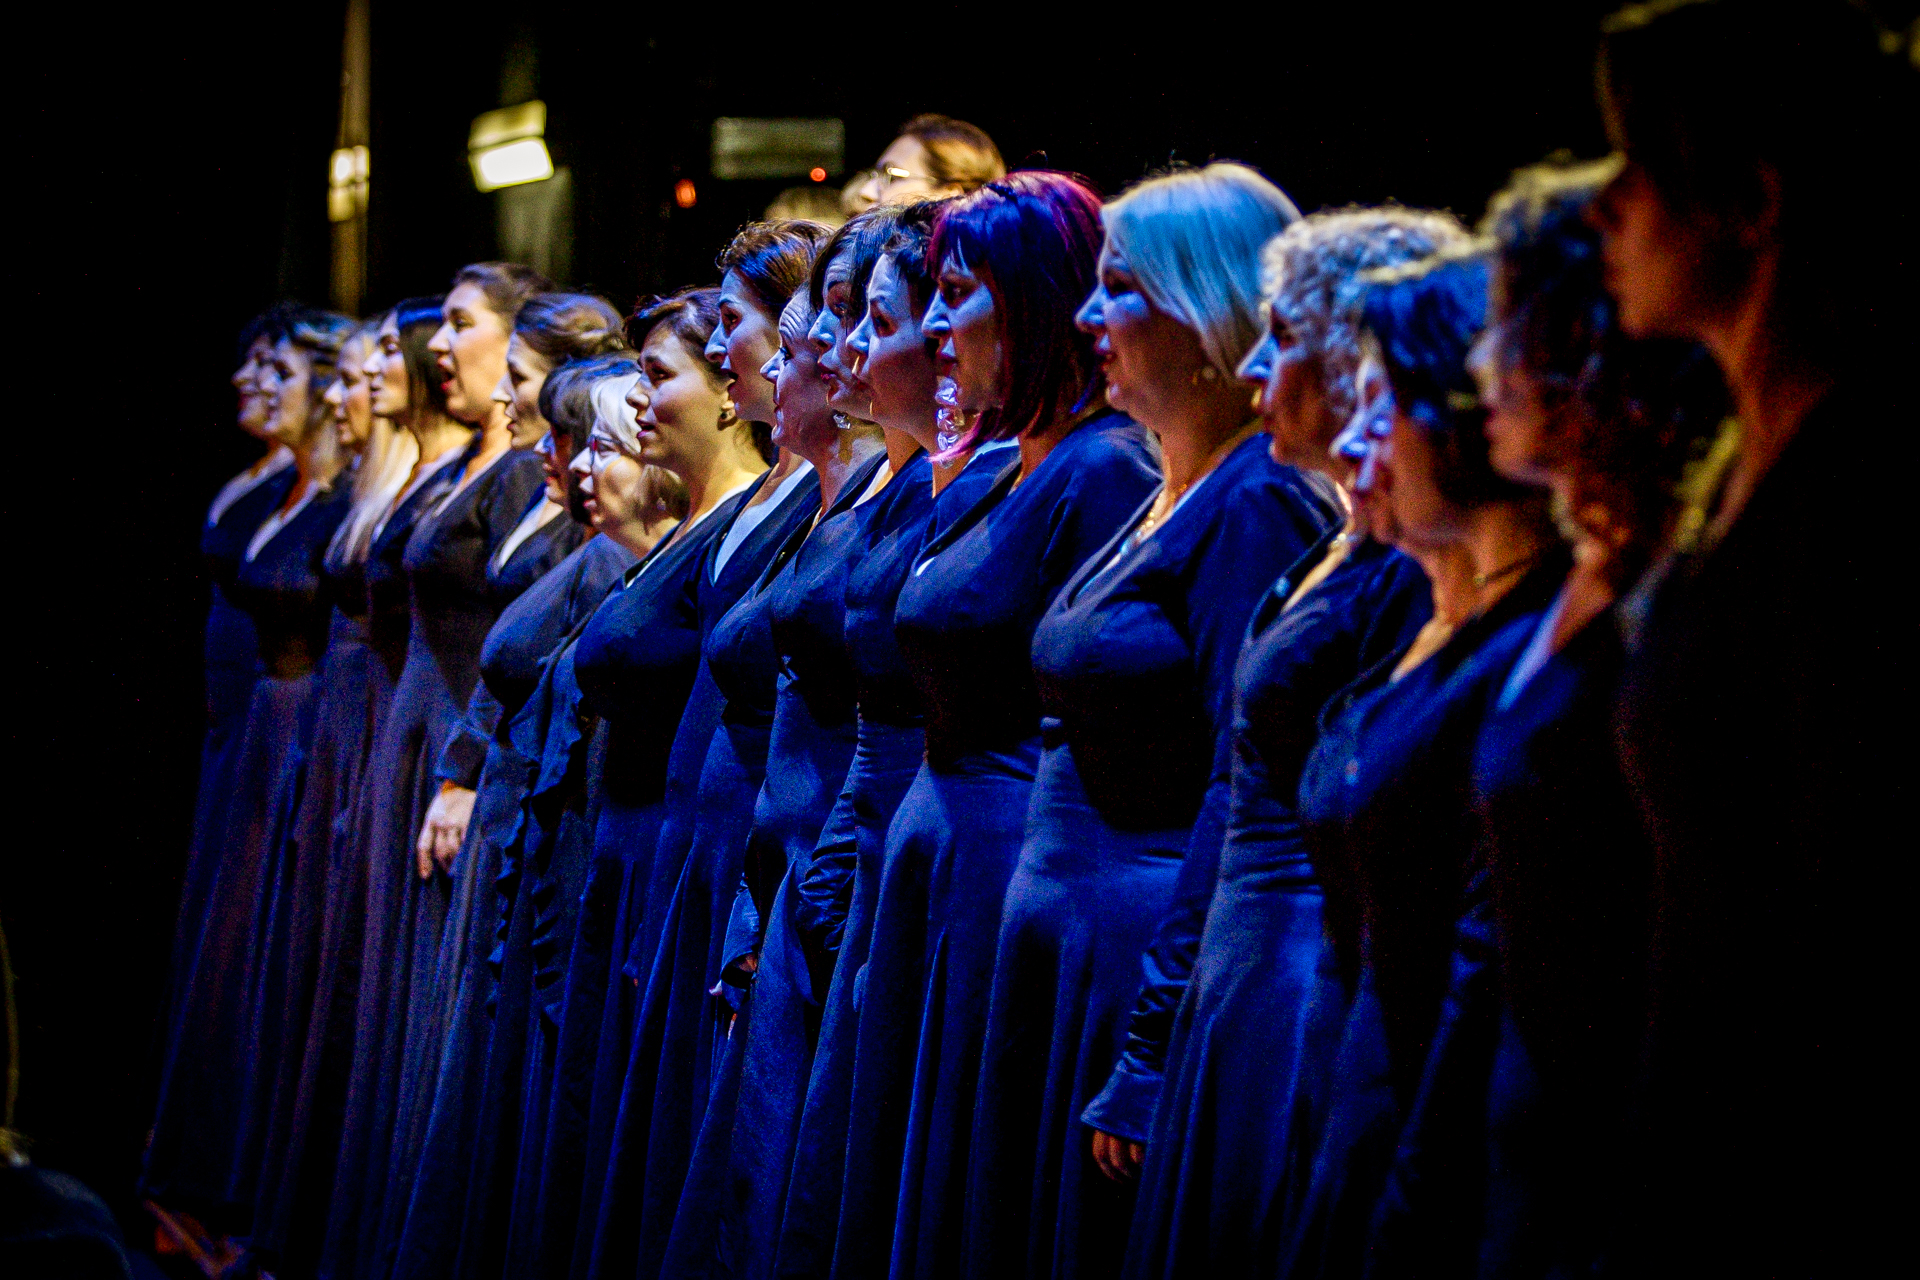 Zdjęcie. Chórzystki w ciemnych niebieskich długich sukniach stoją w jednym rzędzie. To chór opery "Straszny Dwór".